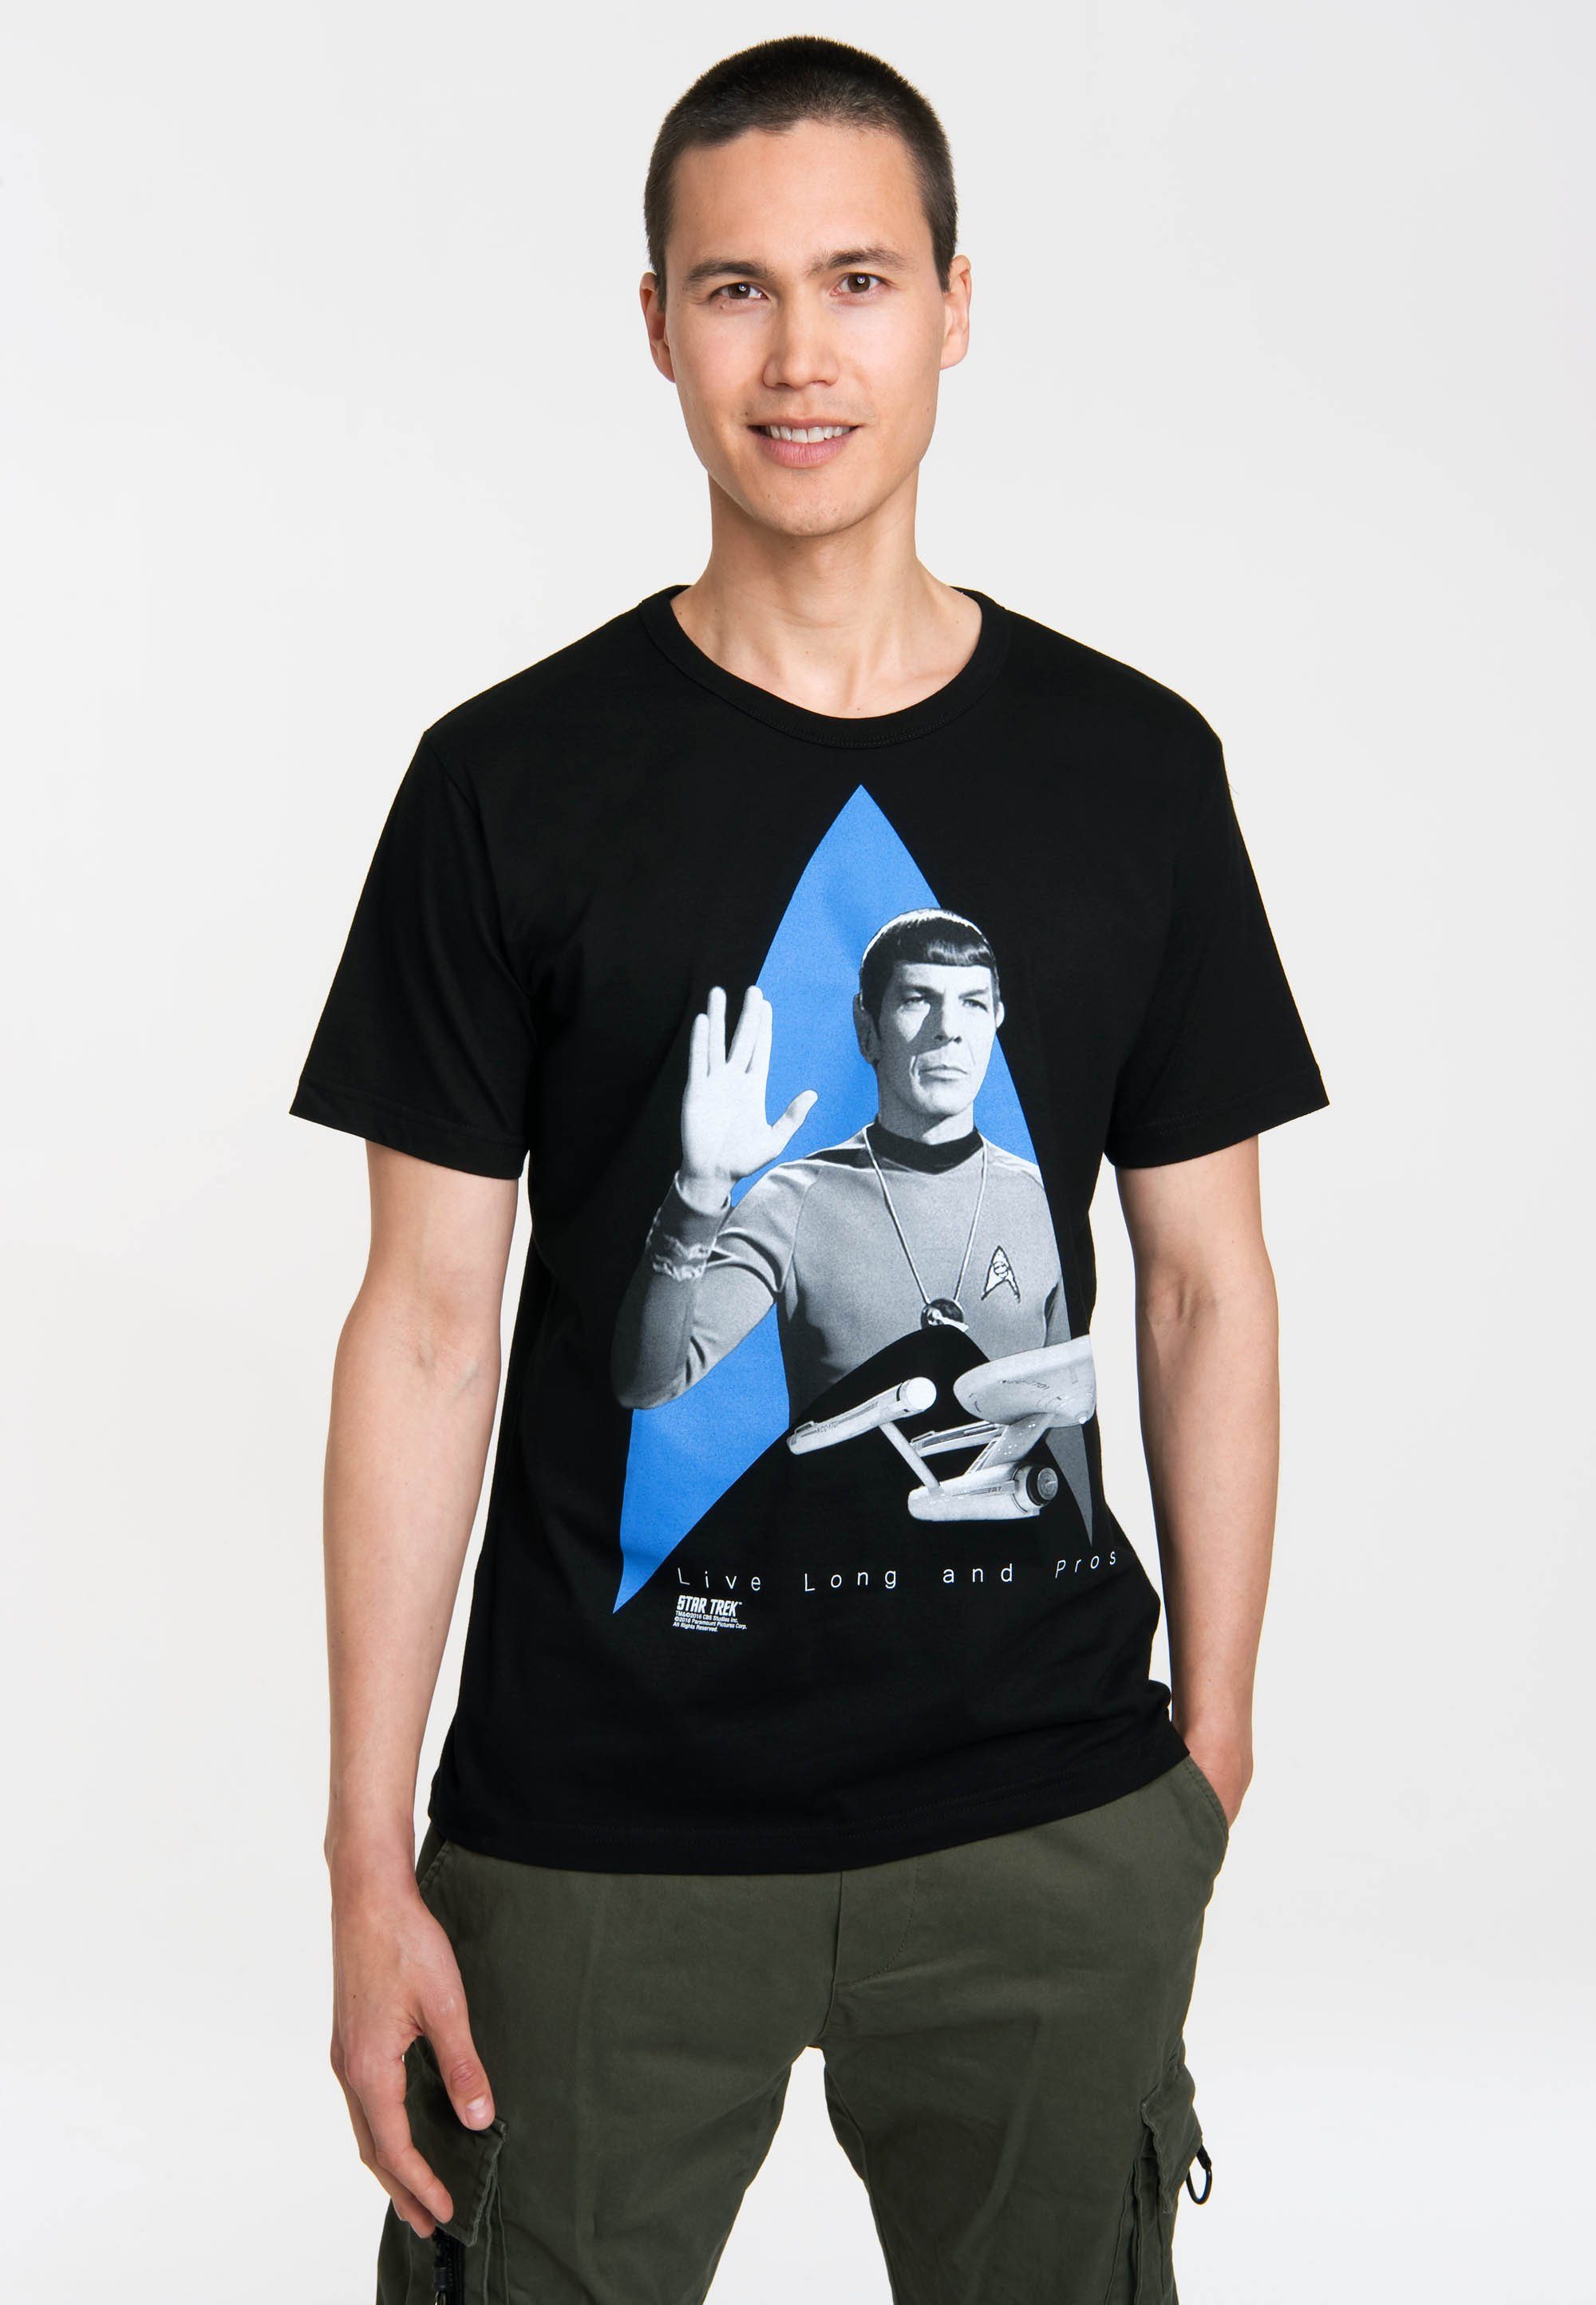 LOGOSHIRT T-Shirt Spock mit coolem Frontdruck